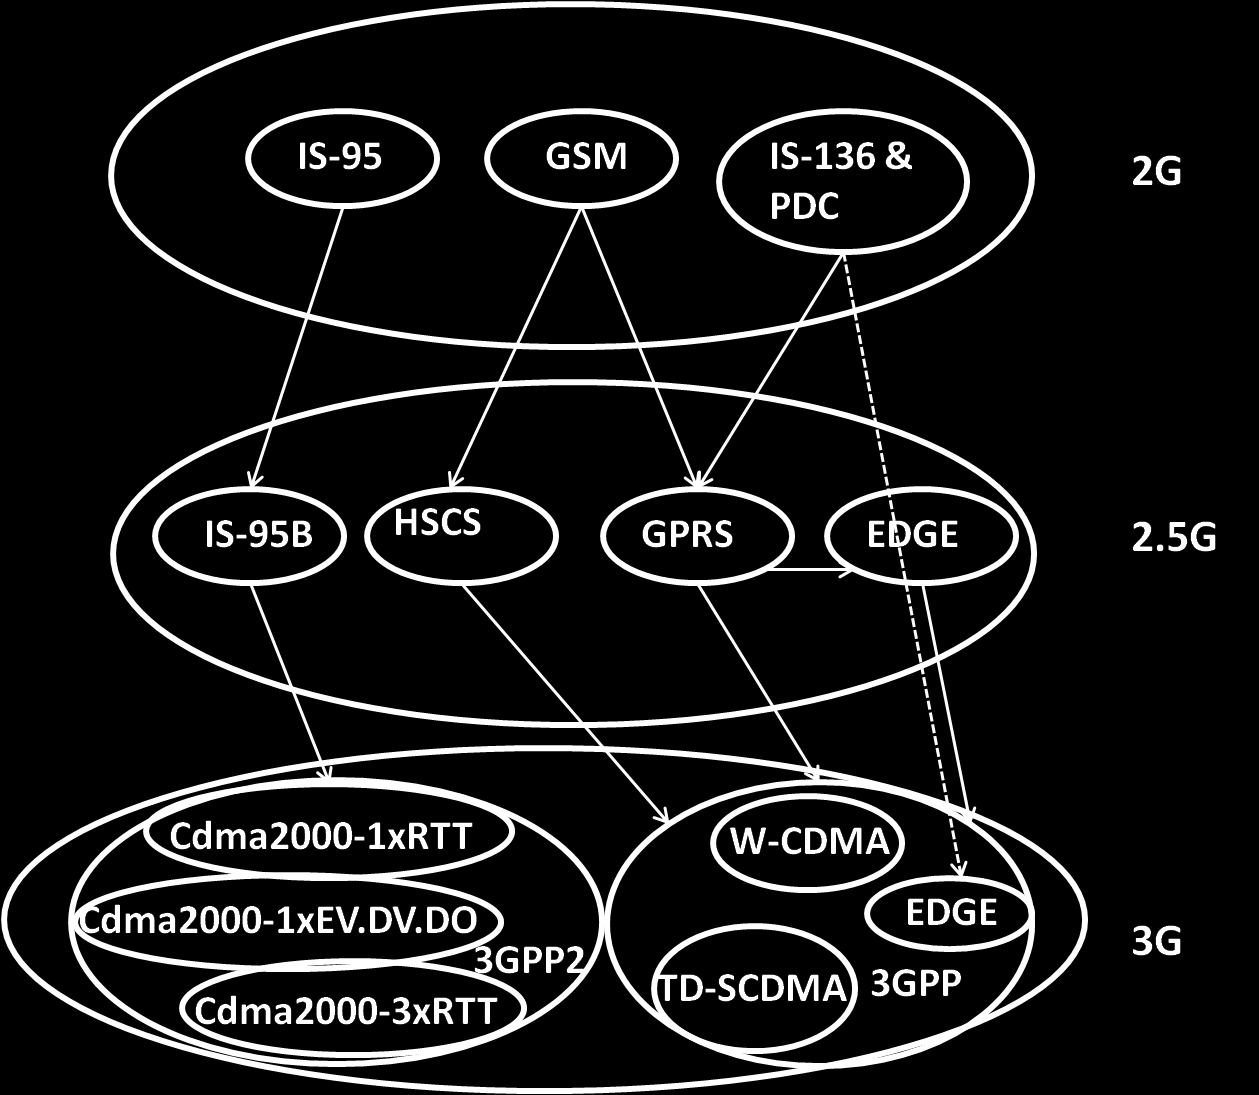 2 δείχνει διάφορα μονοπάτια αναβάθμισης για τις 2G τεχνολογίες, αλλά και για τη 3G. Το πρότυπο 2.5G IS-95B έχει εξελιχθεί από το CDMAone σε 2G το οποίο χρησιμοποιεί κανάλι εύρους ζώνης στα 1,25MHz.